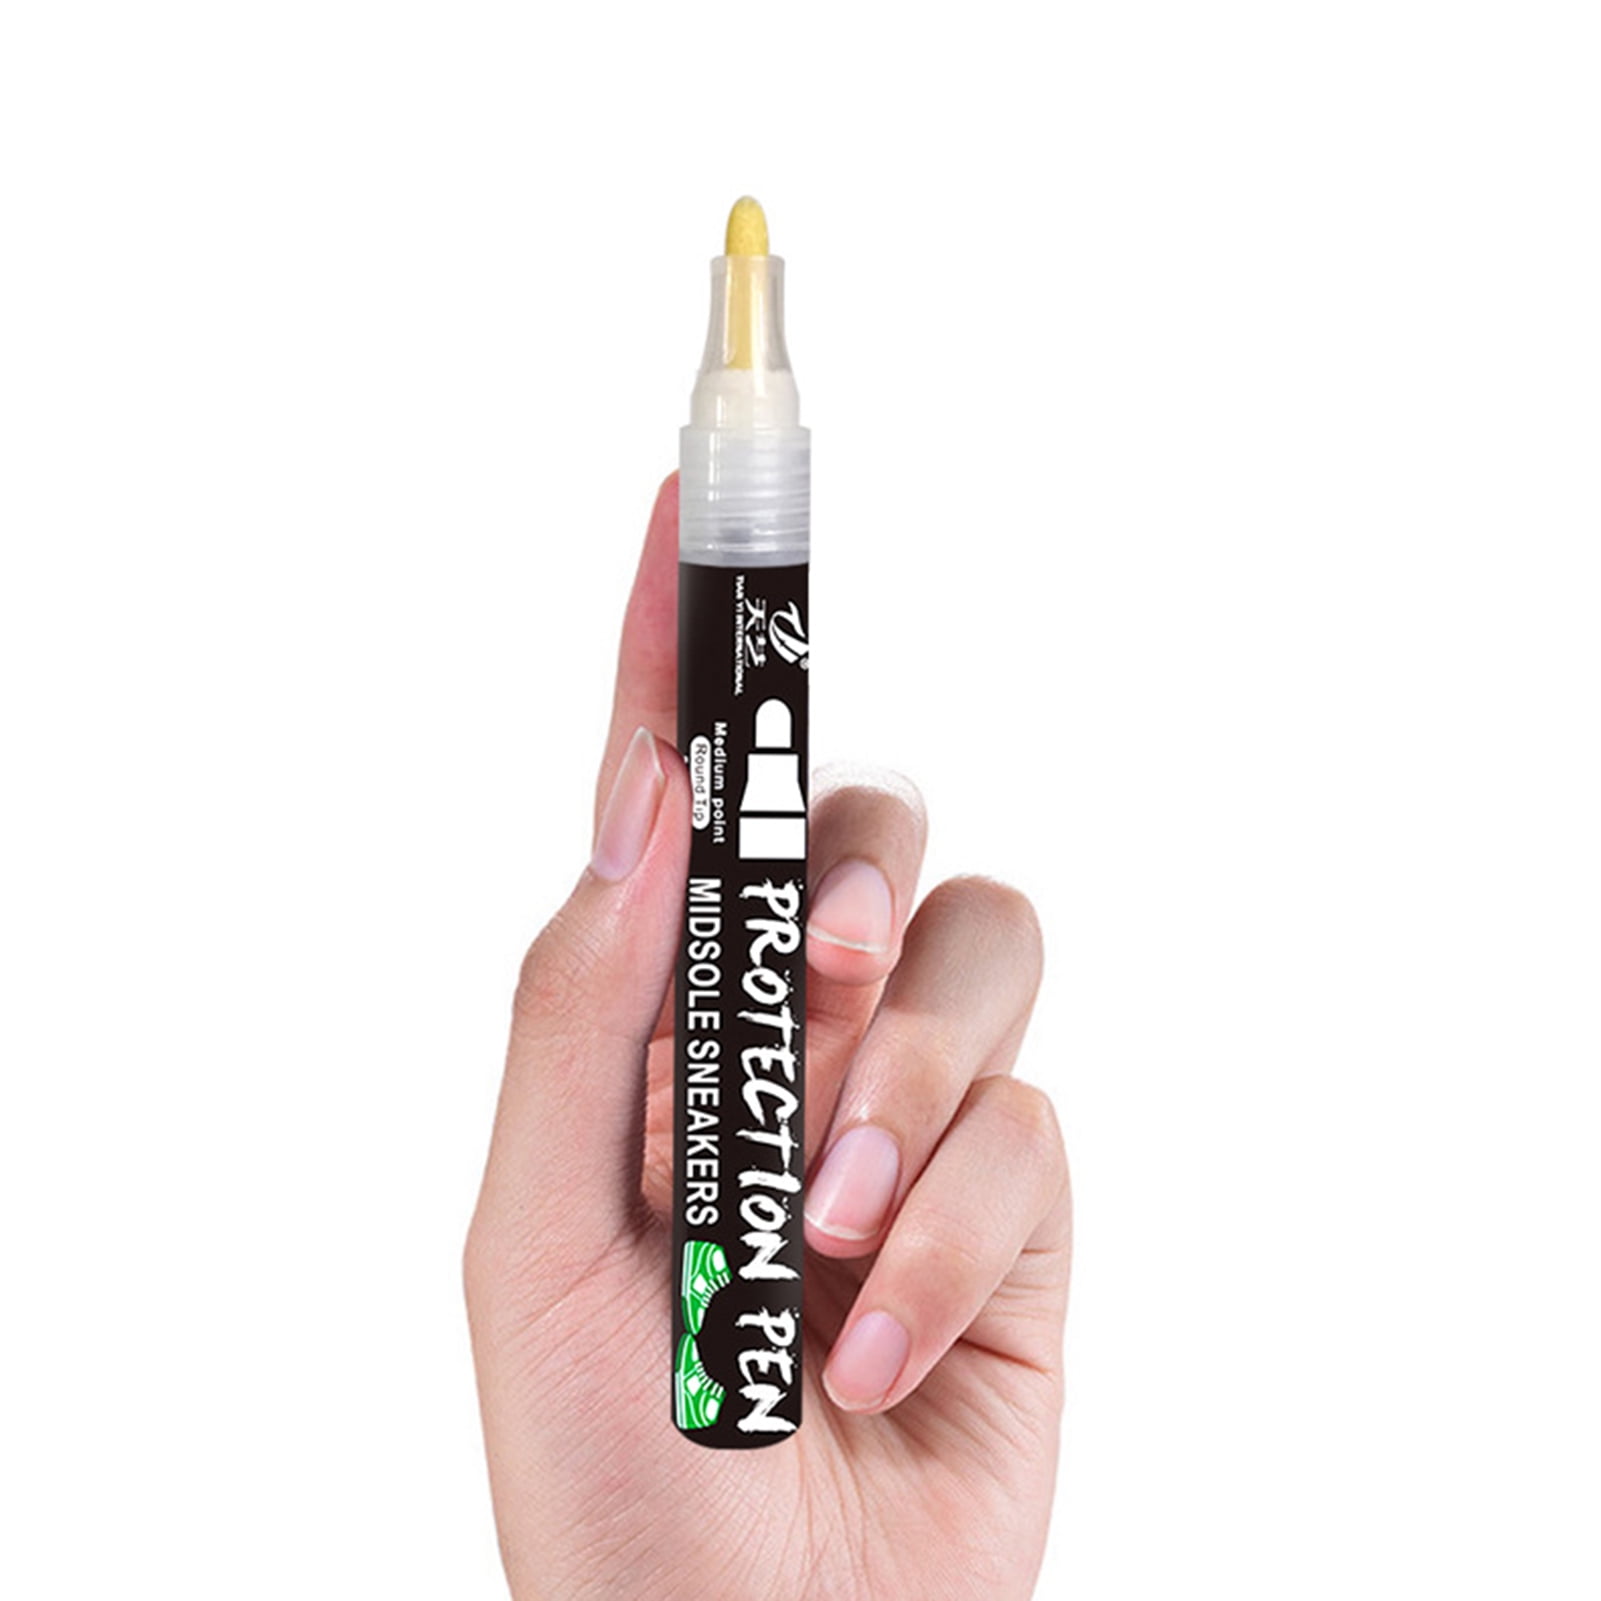 Leather Midsole Marker Cleaner, Sneaker Midsole Paint Pen